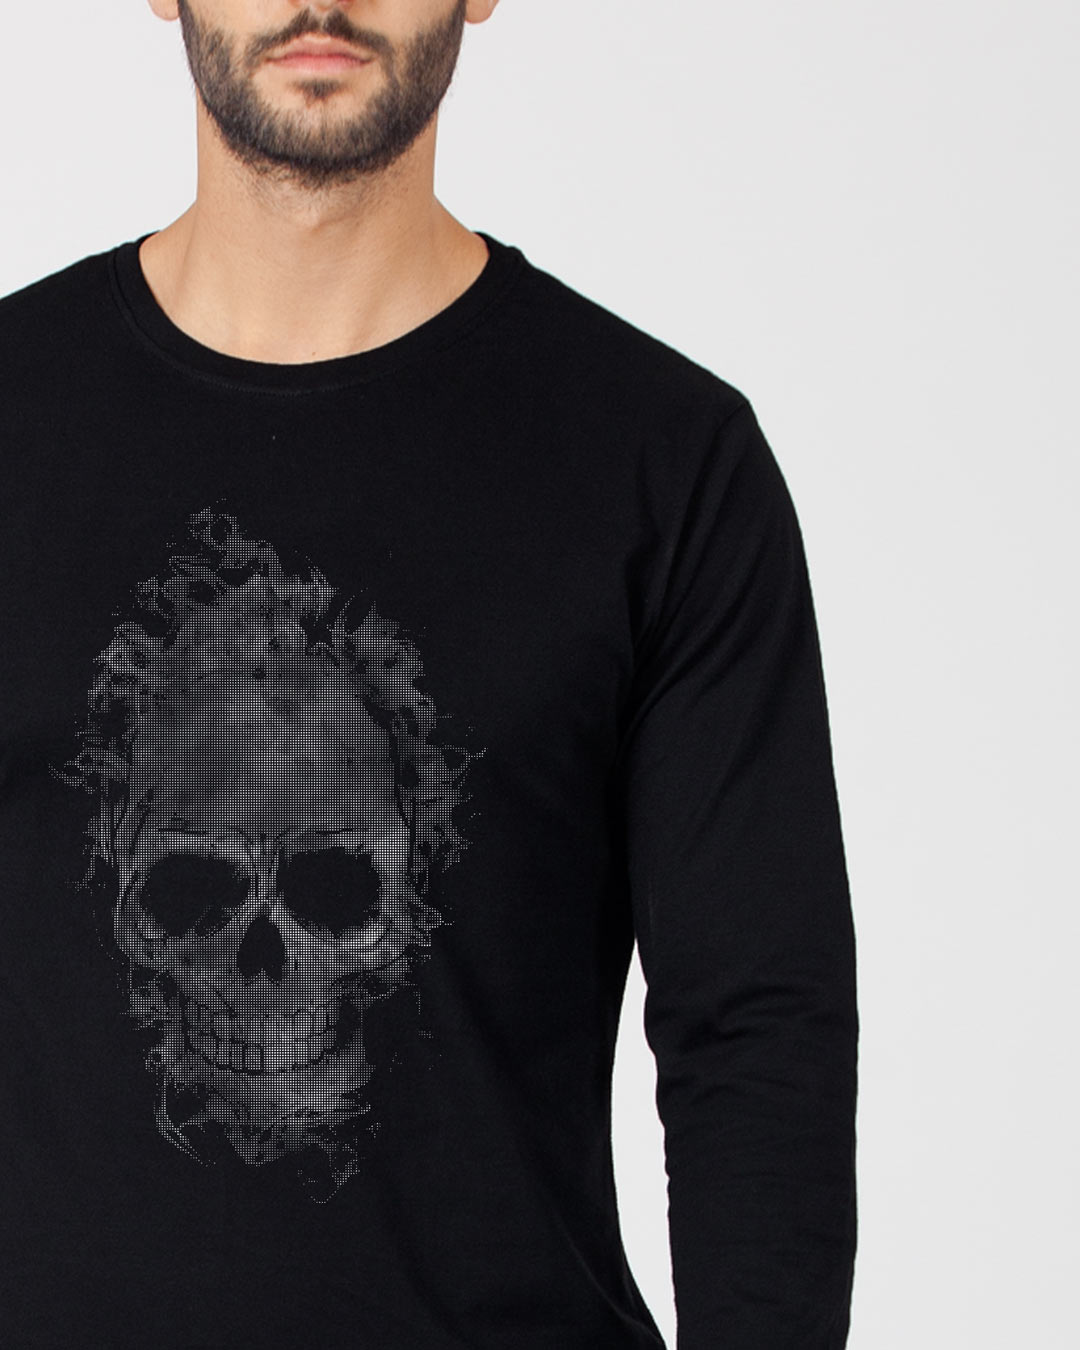 Buy Smokey Skull Full Sleeve T-Shirt for Men black Online at Bewakoof